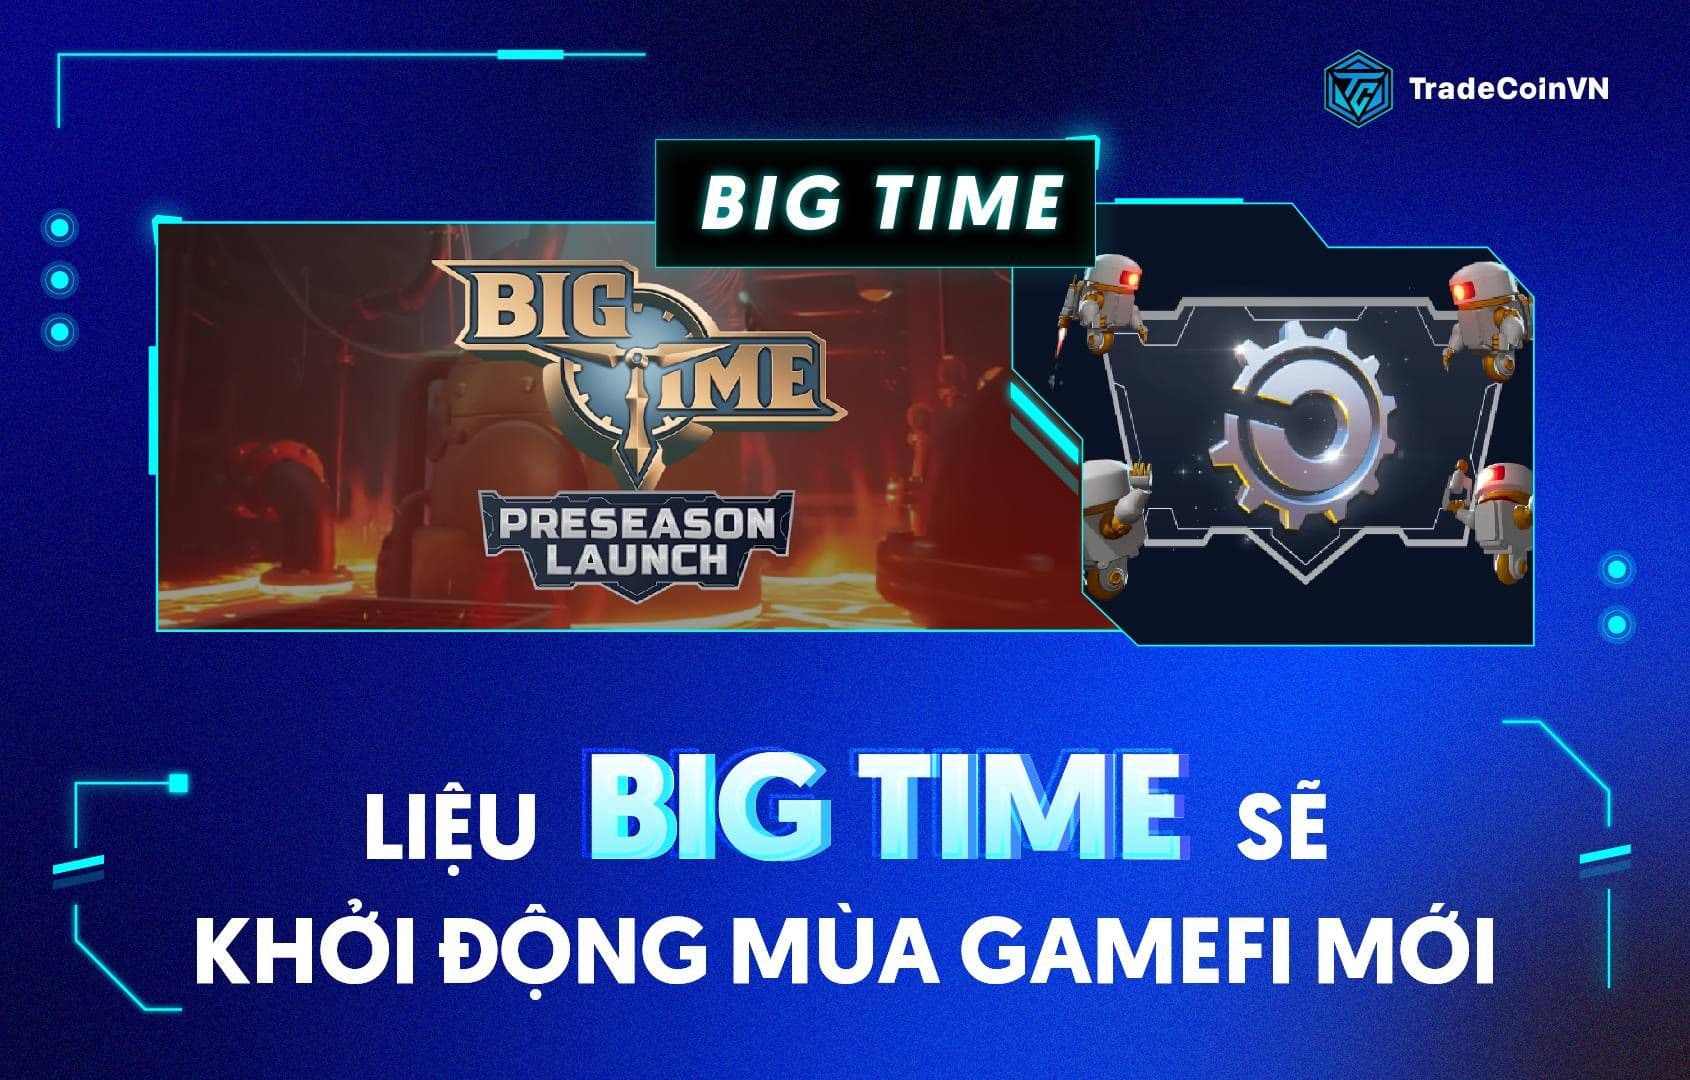 Tăng hơn 20 lần trong 2 ngày, Big Time sẽ khởi động cho mùa GameFi mới?